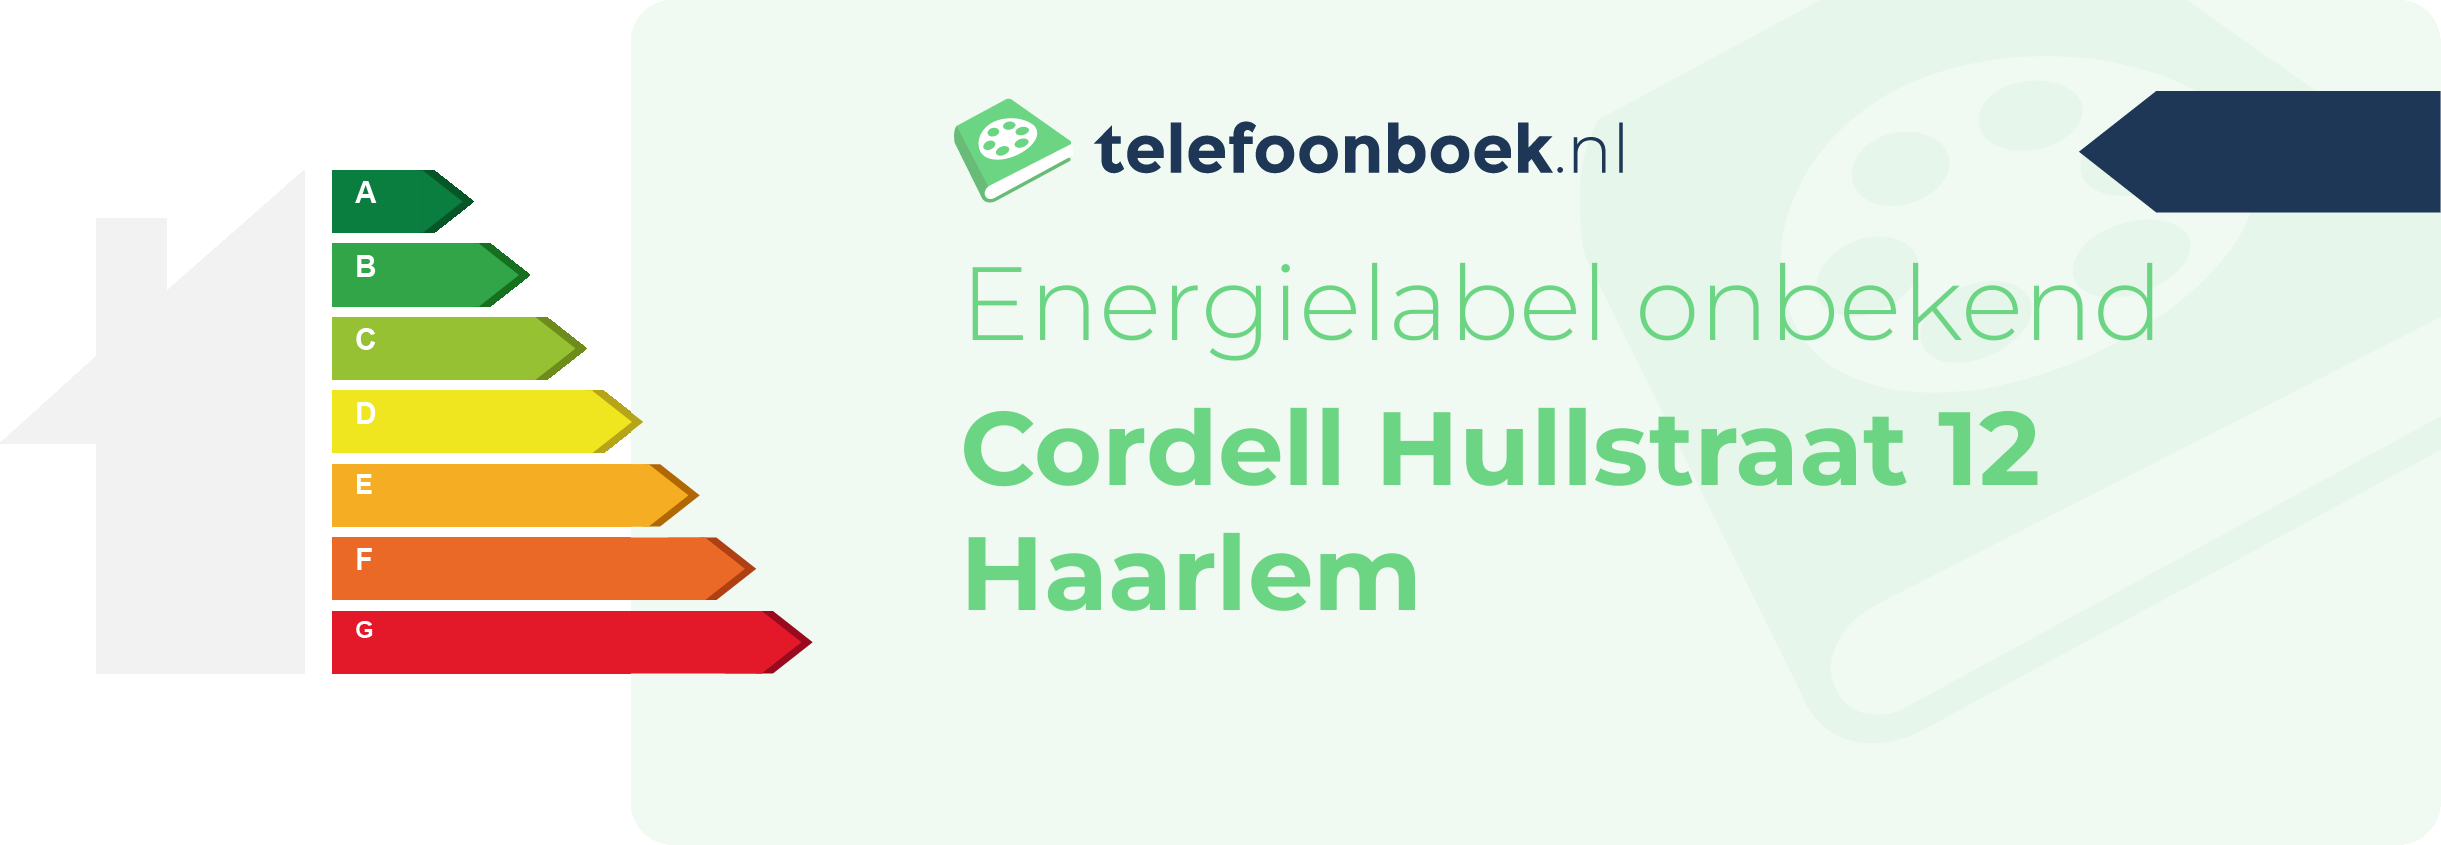 Energielabel Cordell Hullstraat 12 Haarlem